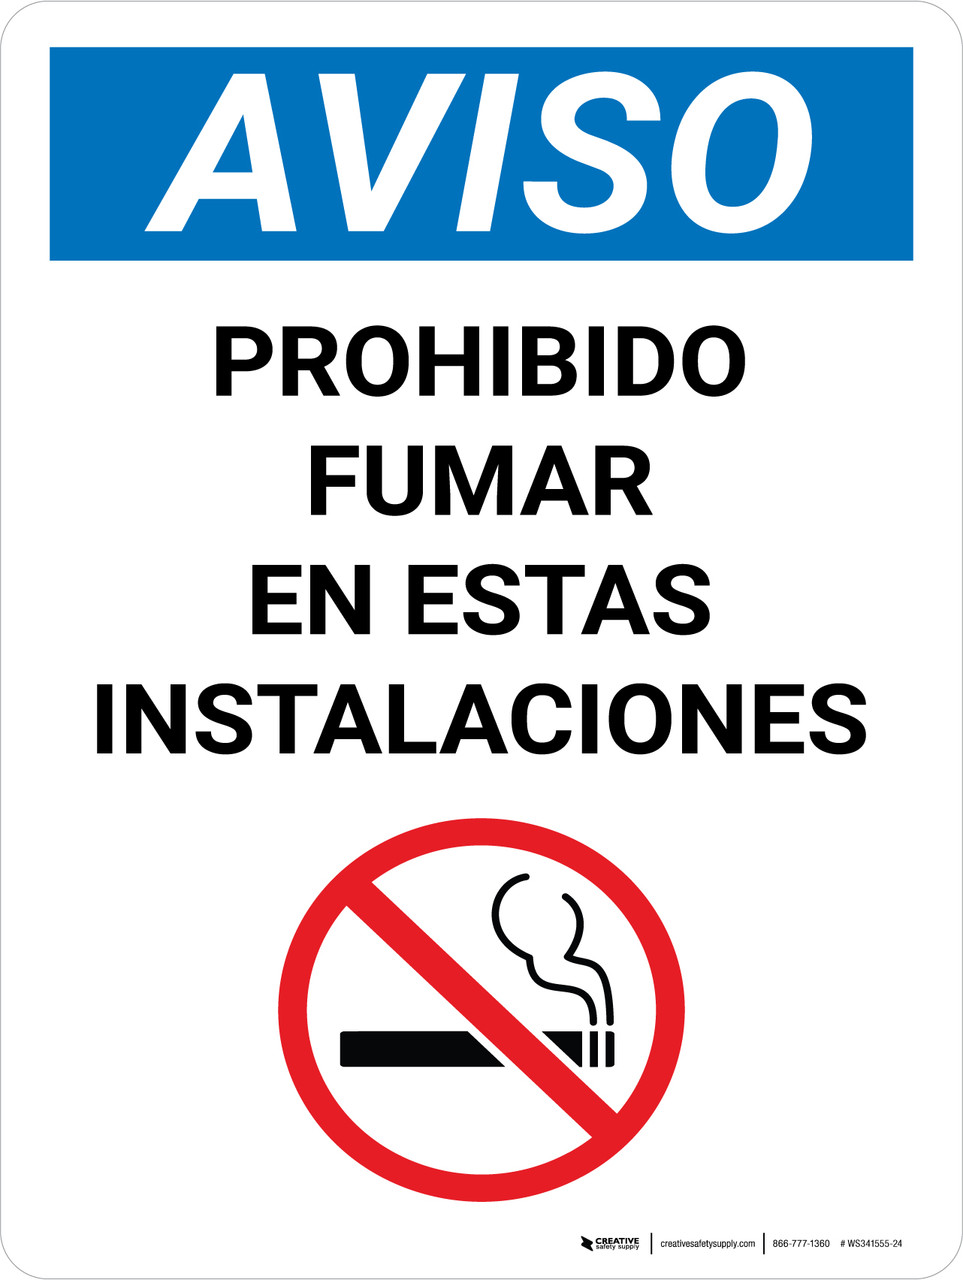 Aviso - Prohibido Fumar en Estas Instalaciones - Wall Sign